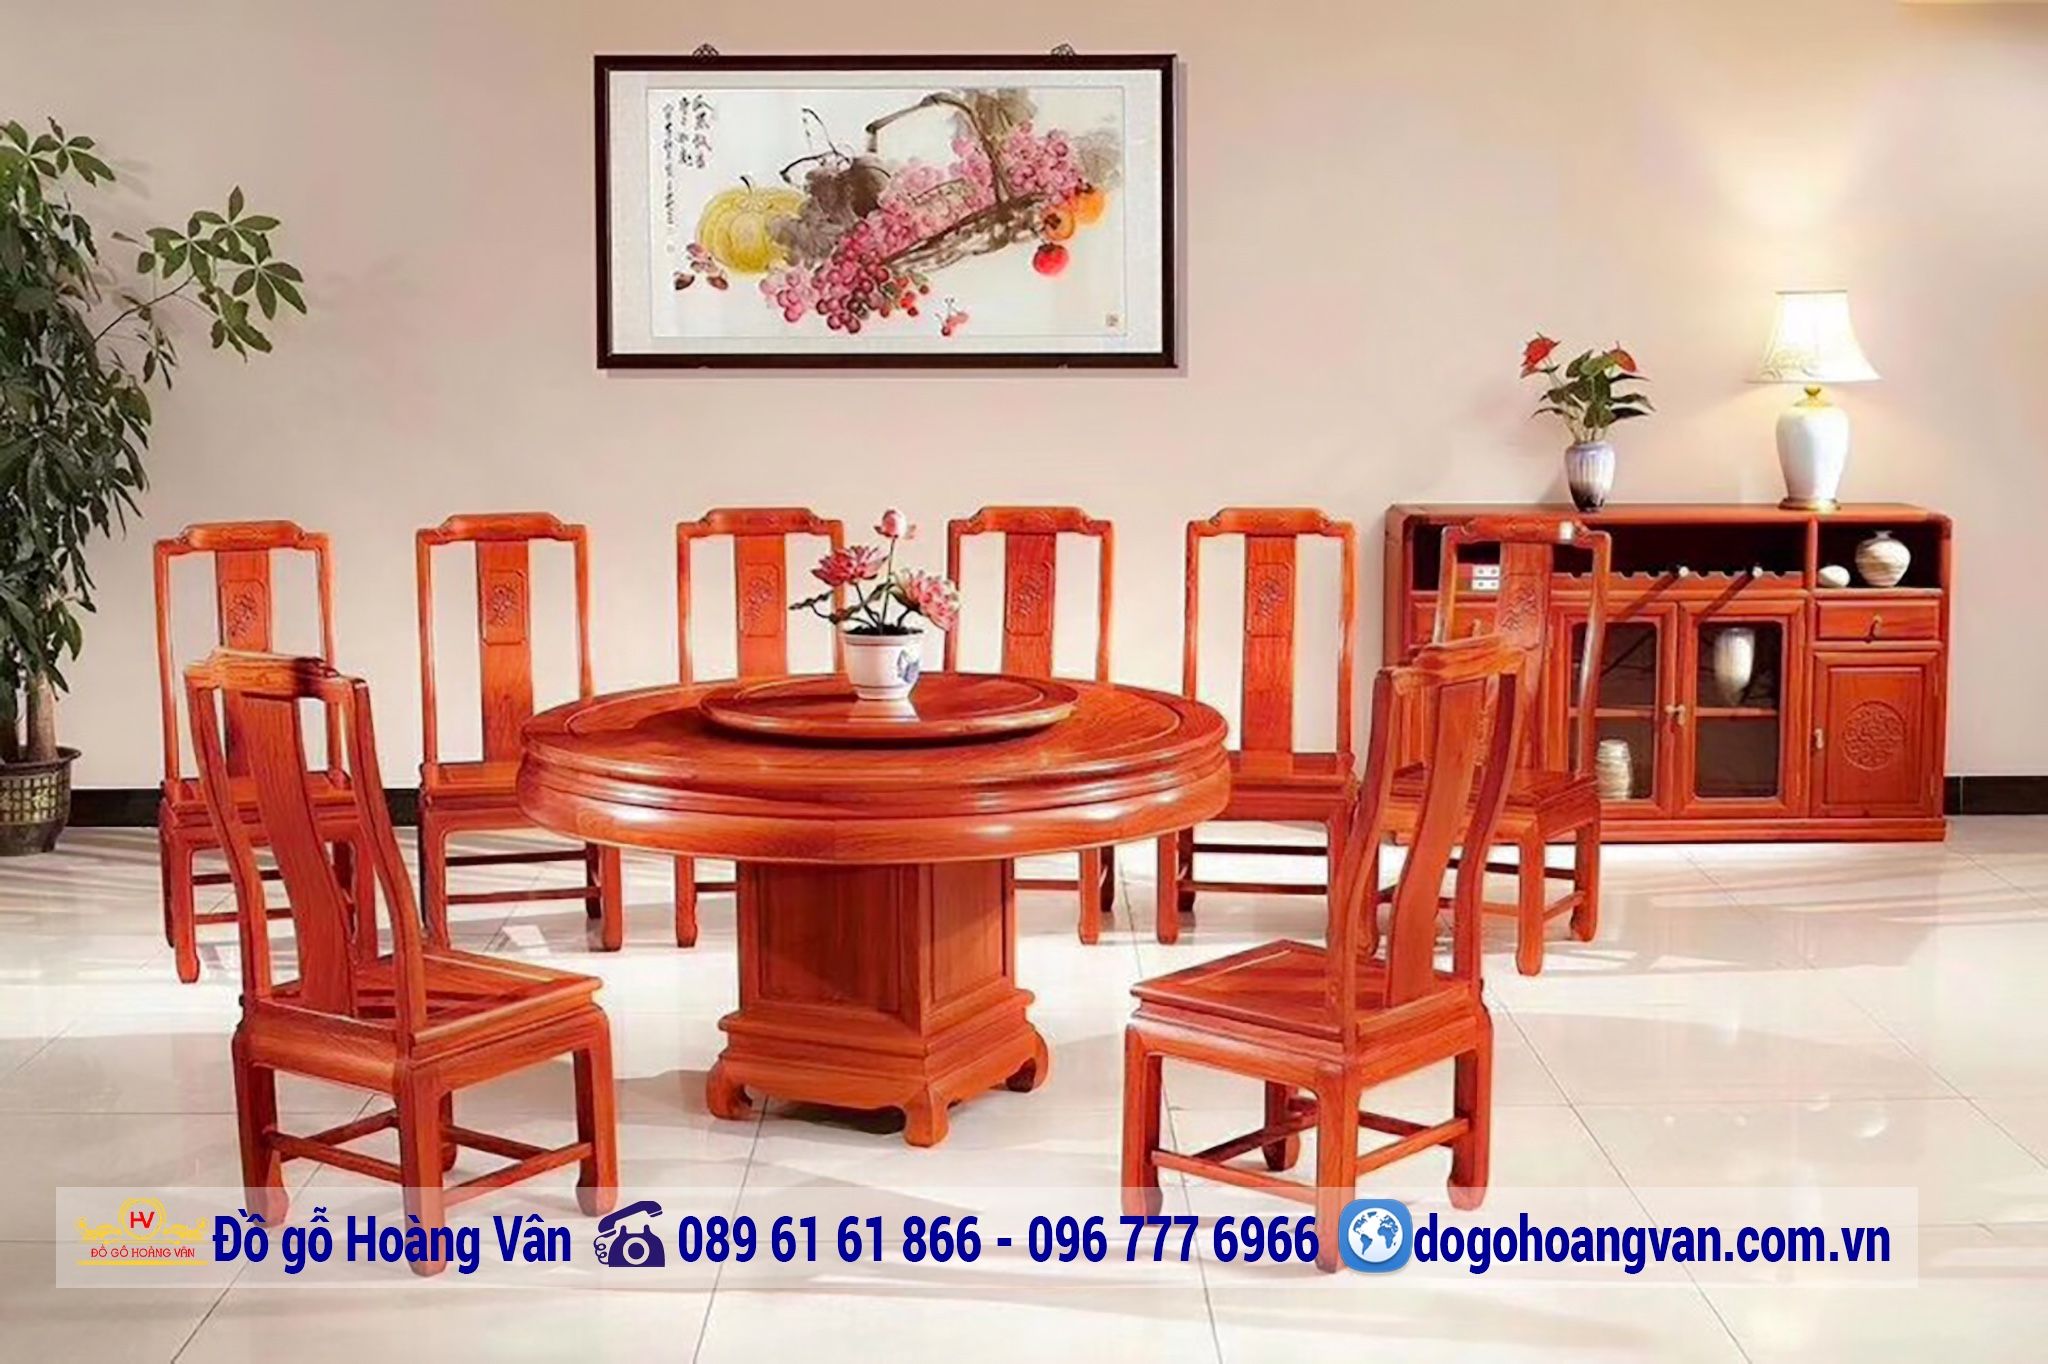 Đồ gỗ Hoàng Vân - Với hơn 30 năm kinh nghiệm trong lĩnh vực đồ gỗ nghệ thuật, Hoàng Vân đã đưa tinh hoa nghệ thuật Việt vào trong từng sản phẩm. Với sự kết hợp hài hòa giữa nghệ thuật và kỹ thuật, đồ gỗ Hoàng Vân sẽ mang đến cho bạn những tác phẩm gỗ đẹp mắt và đầy tính nghệ thuật.